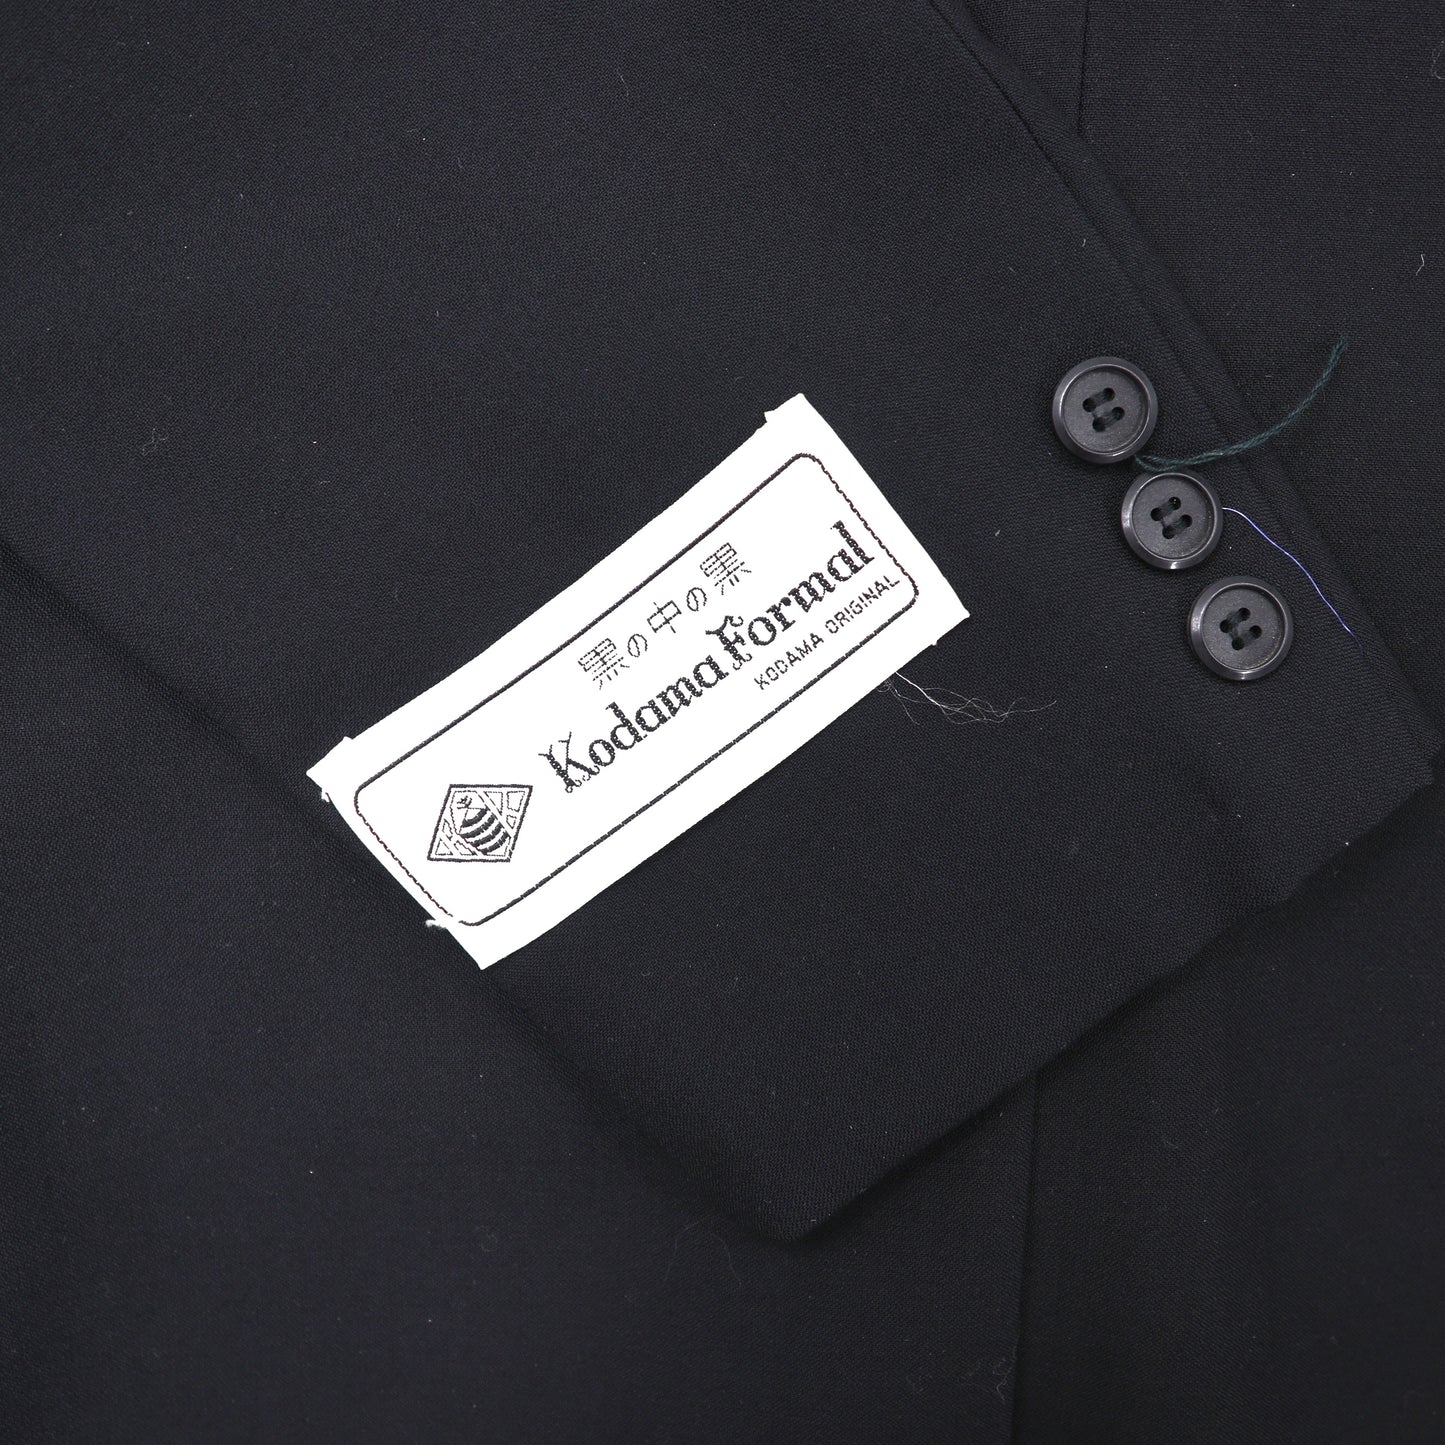 Kodama Formal スーツ セットアップ 92A4 ブラック ウール 未使用品